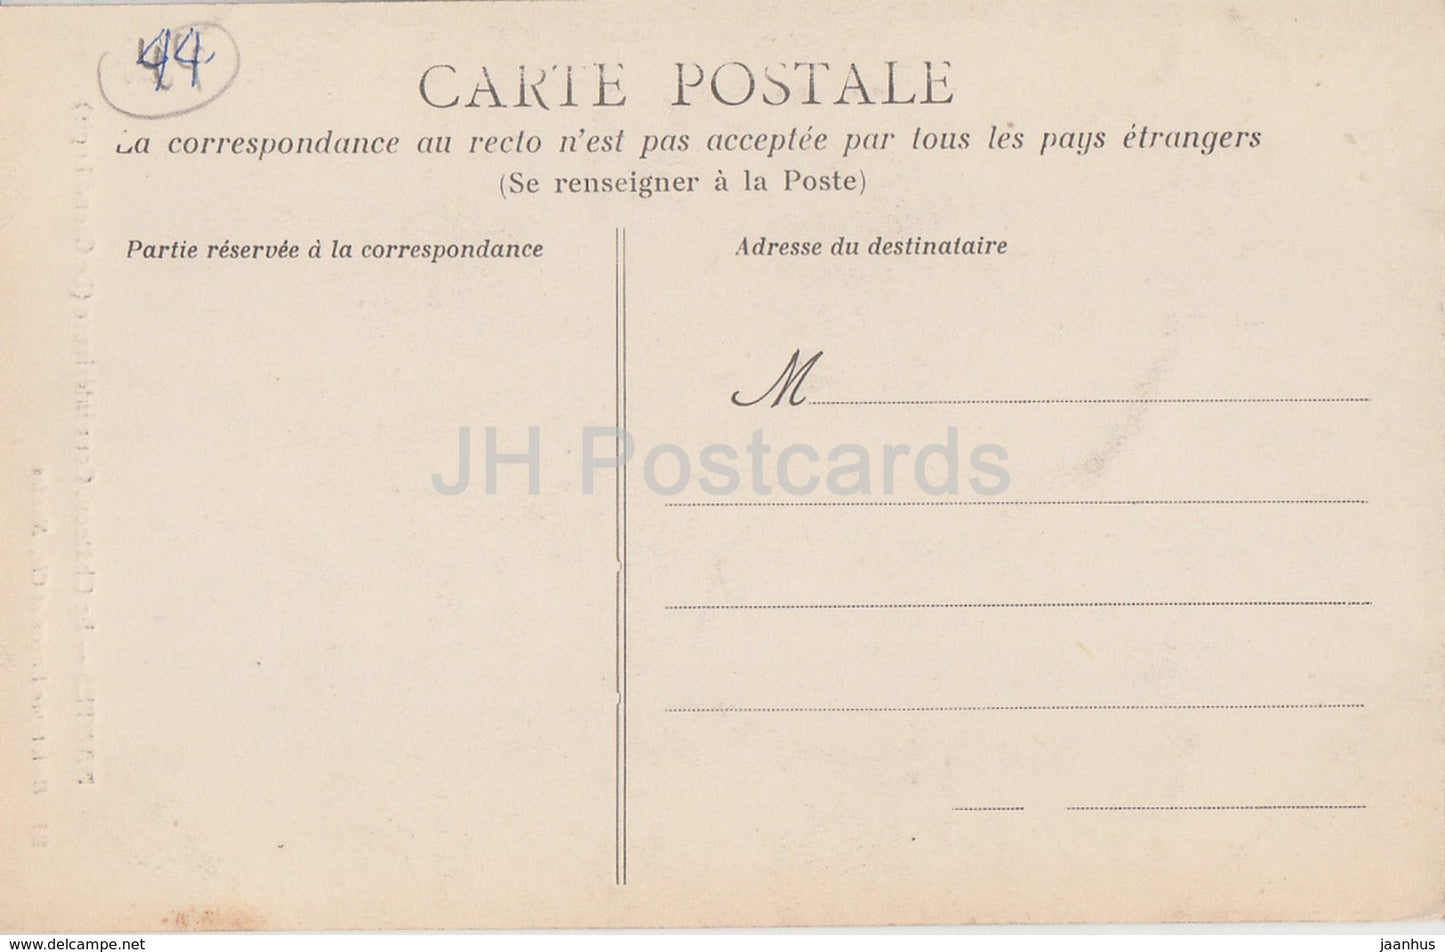 Nantes - Le Chateau - Cour Interieure - Le Grand Logis - 81 - carte postale ancienne - France - inutilisée